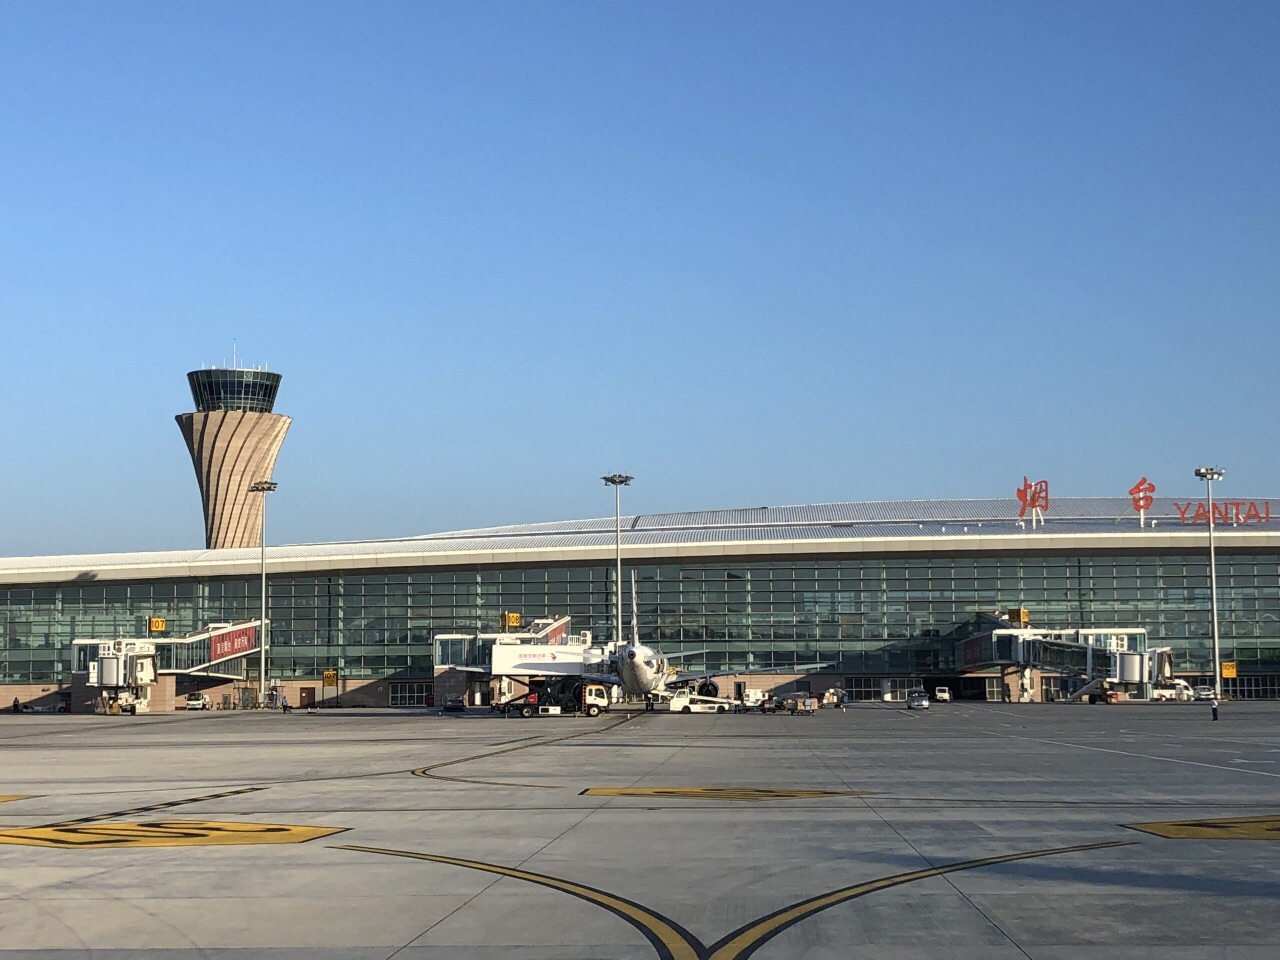 牡丹江的航班经停烟台机场,因此得以体验了一下烟台机场,候机厅内各种